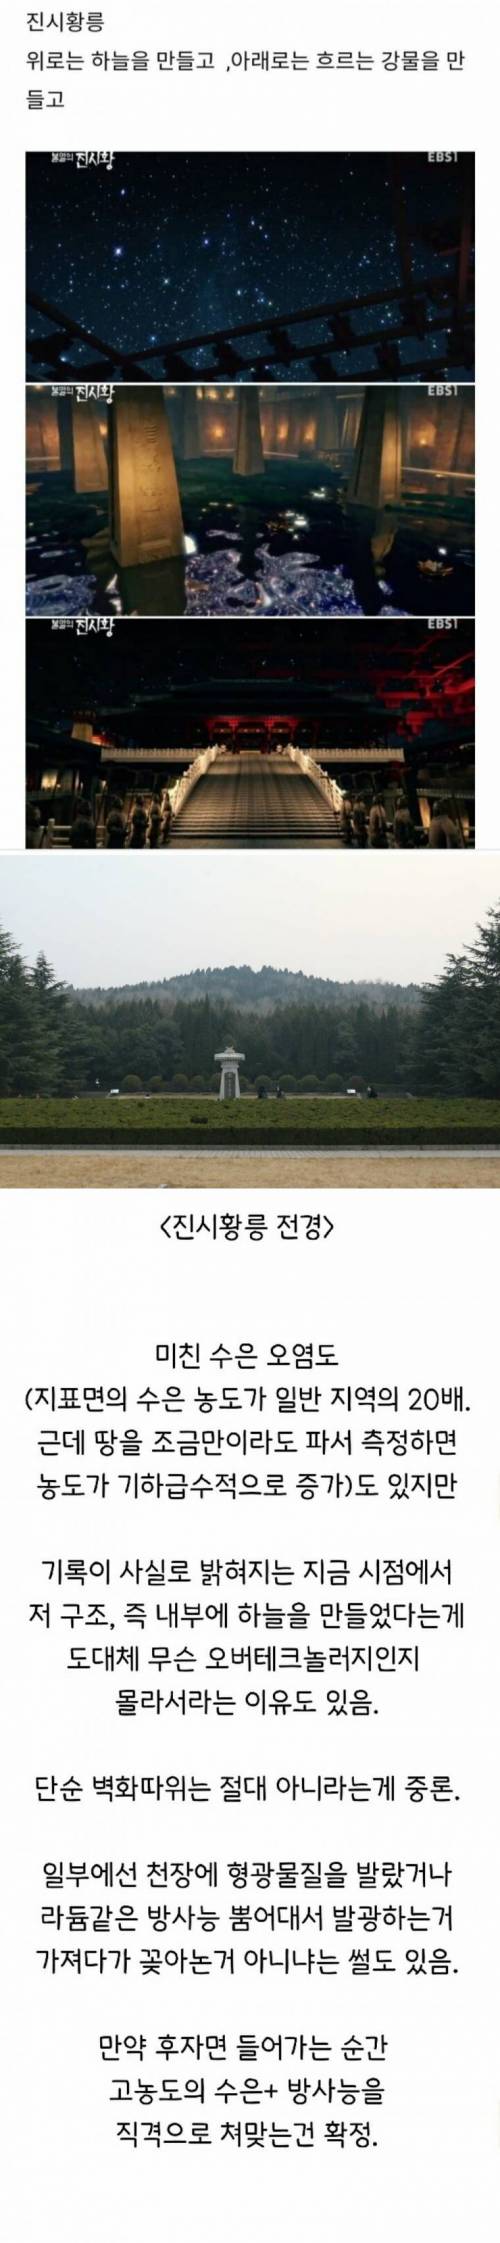 진시황릉 발굴이 빡쎈 이유.jpg